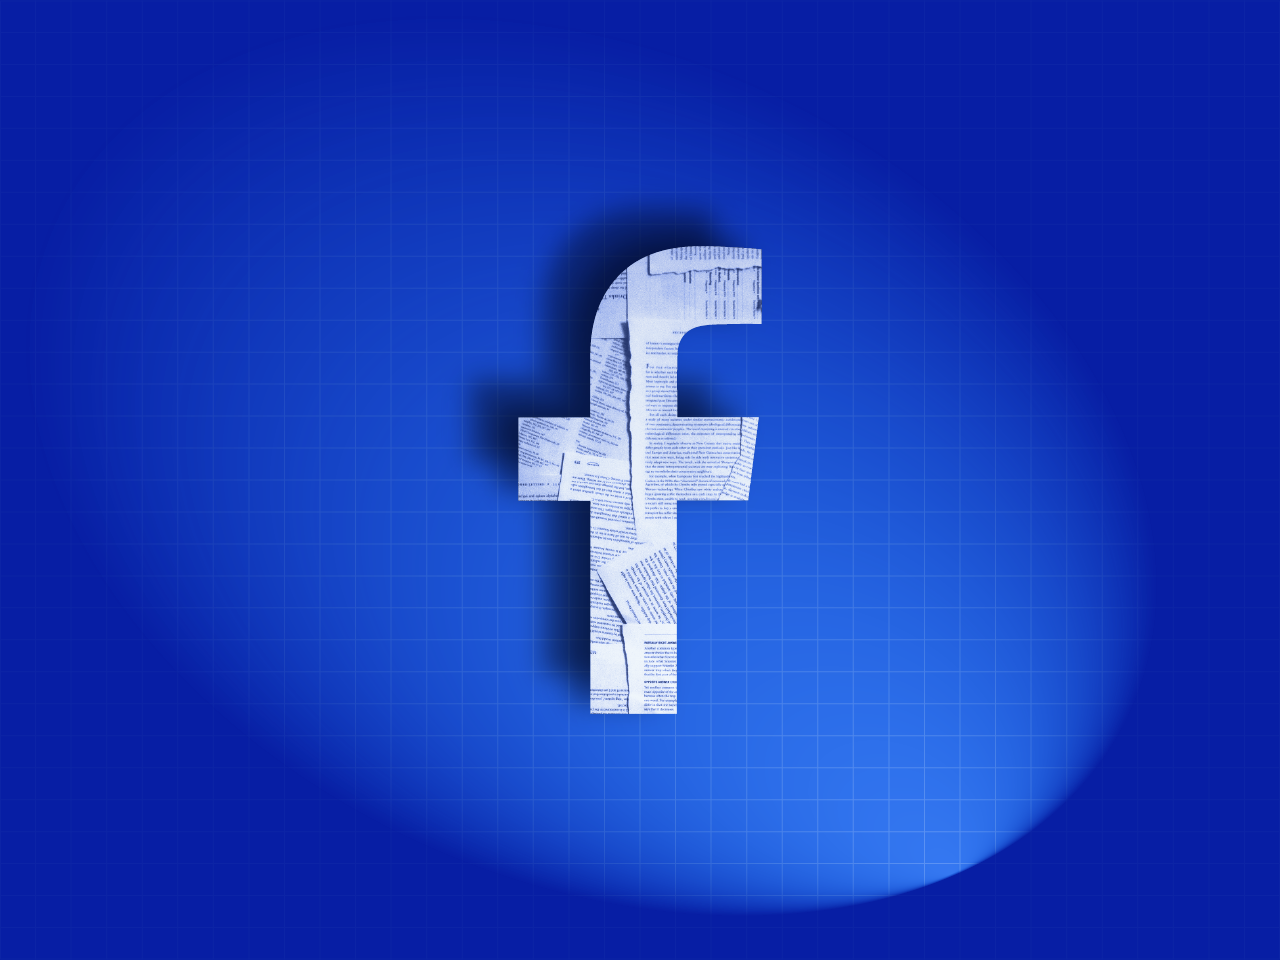 VÍDEO: após #FacebookPapers, o que esperar das redes em 2022?